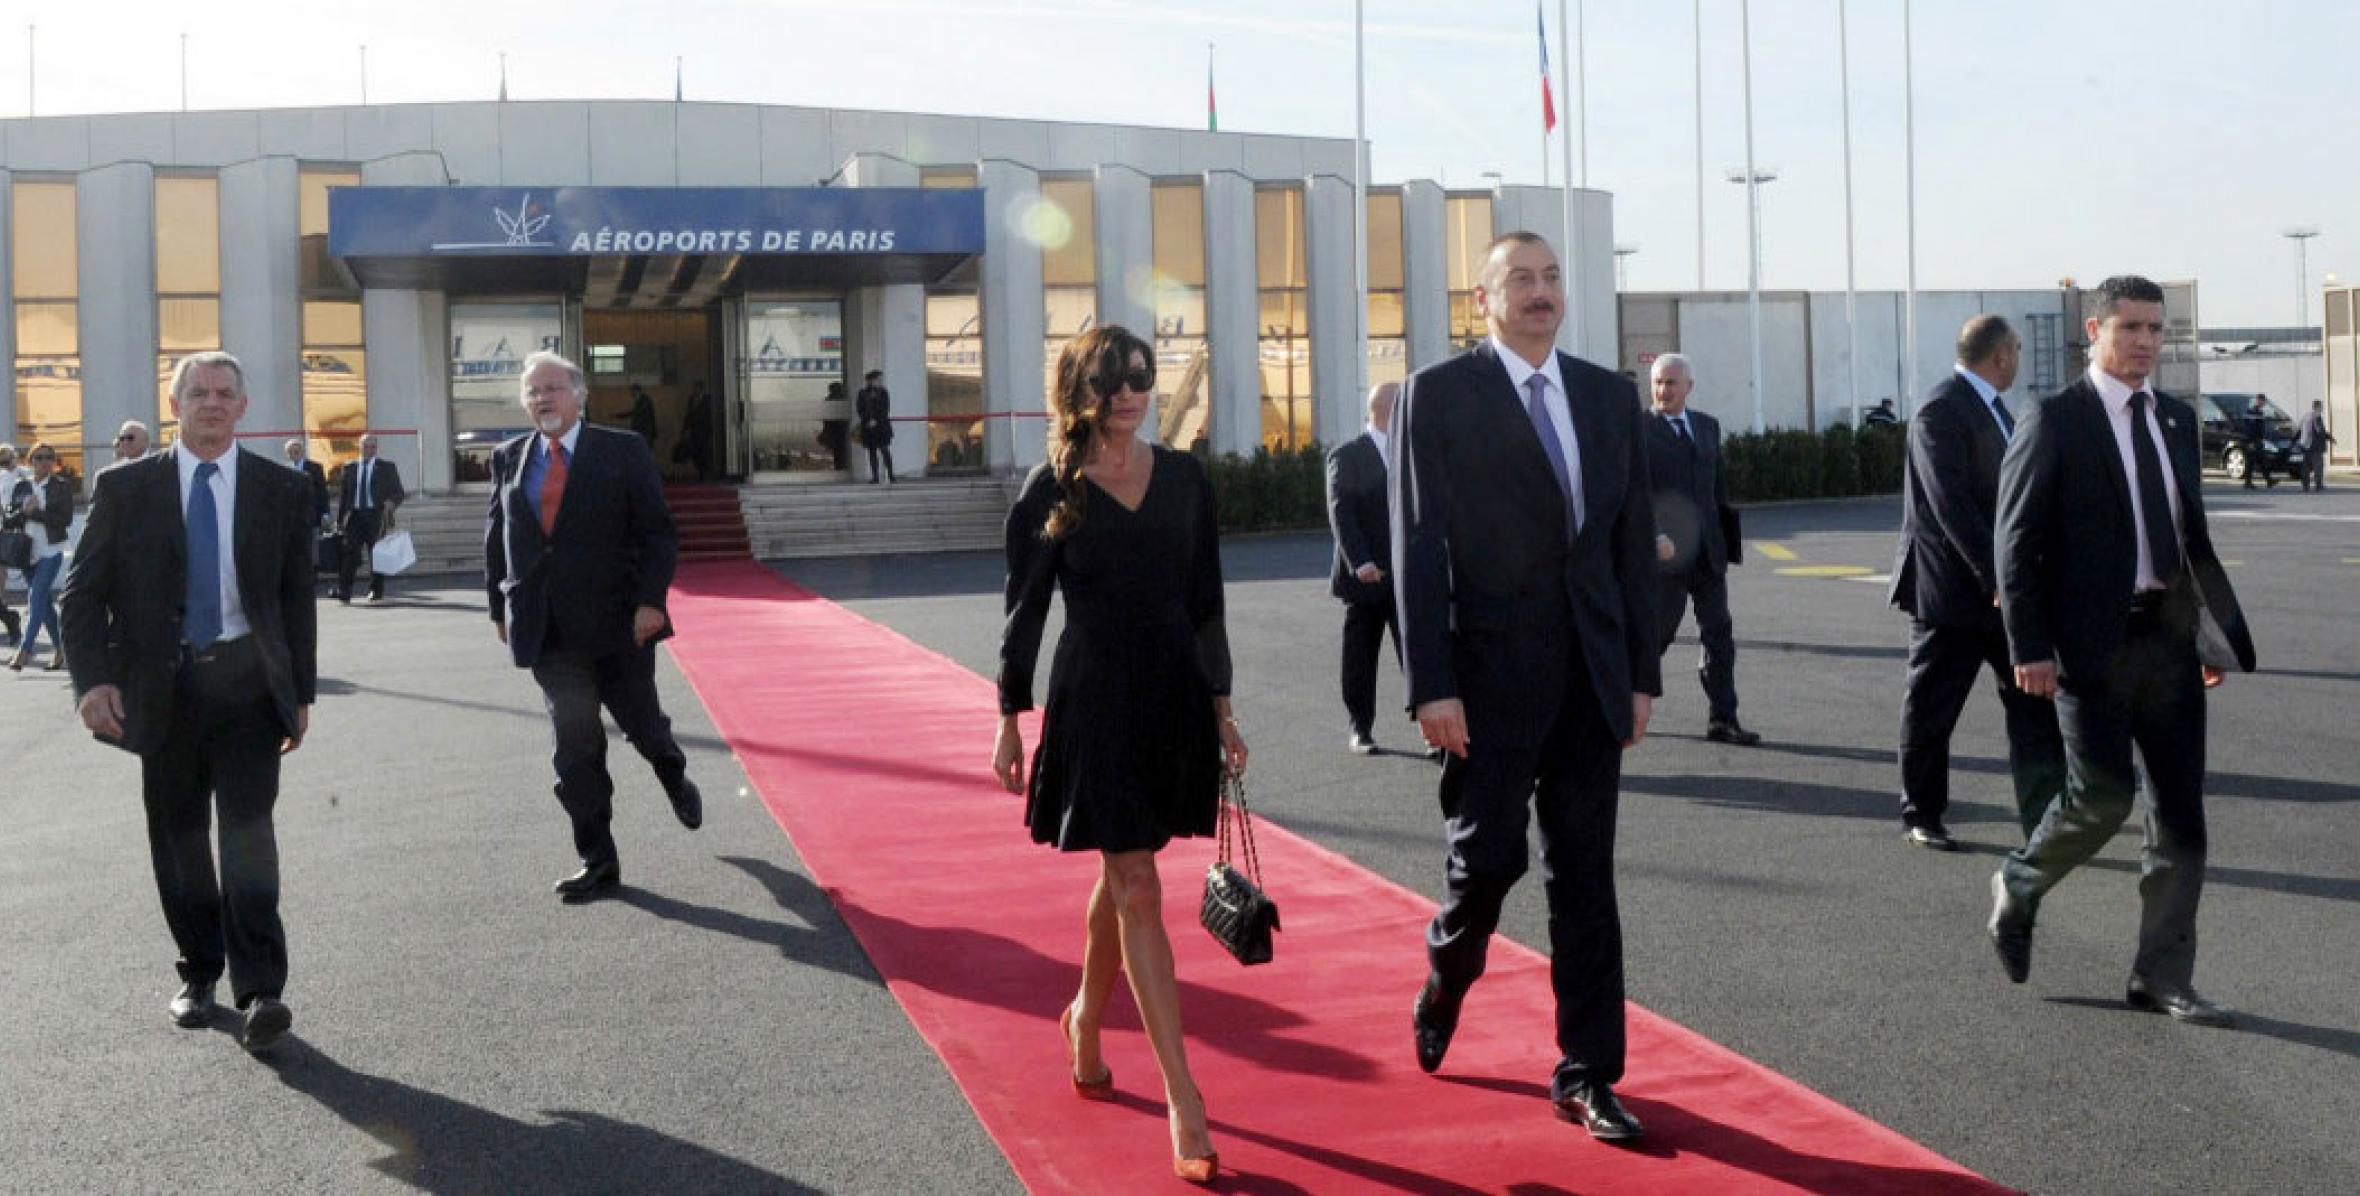 Ильхам Алиев, завершив рабочий визит во Французскую Республику, возвратился в Баку